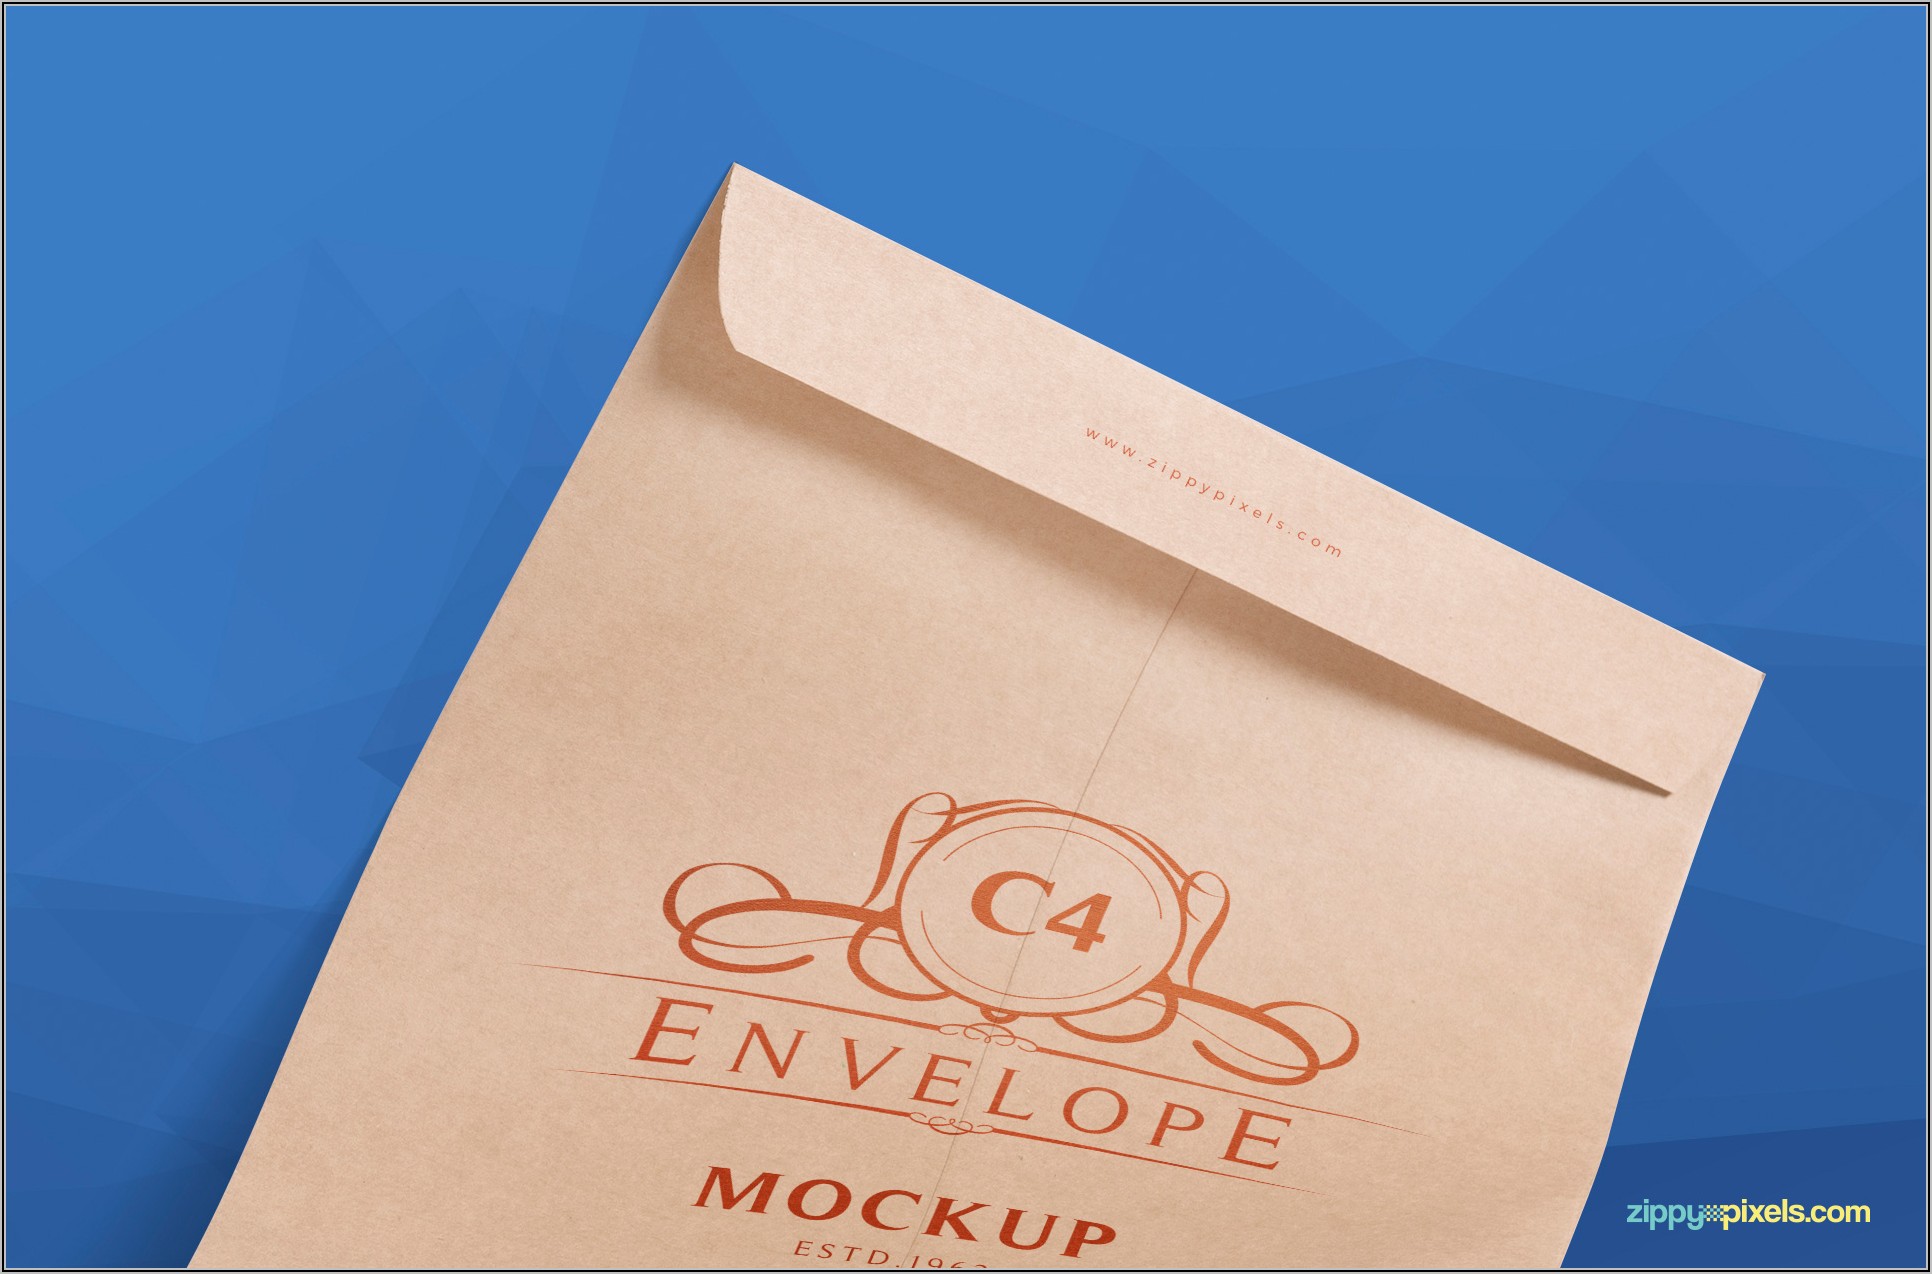 C4 Envelope Mockup Free